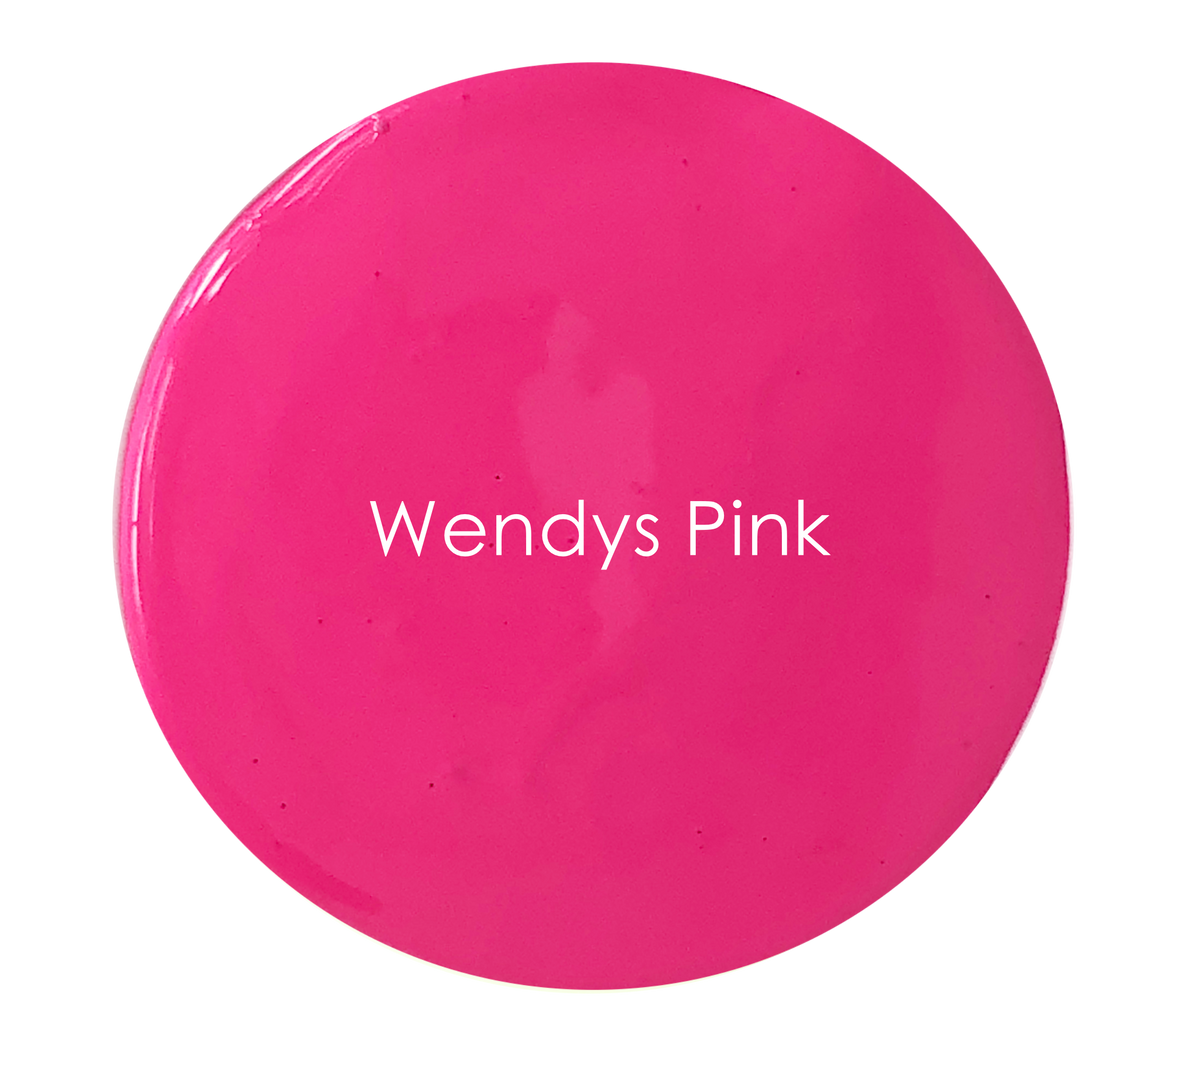 WENDY'S PINK - PREMIUM CHALK PAINT